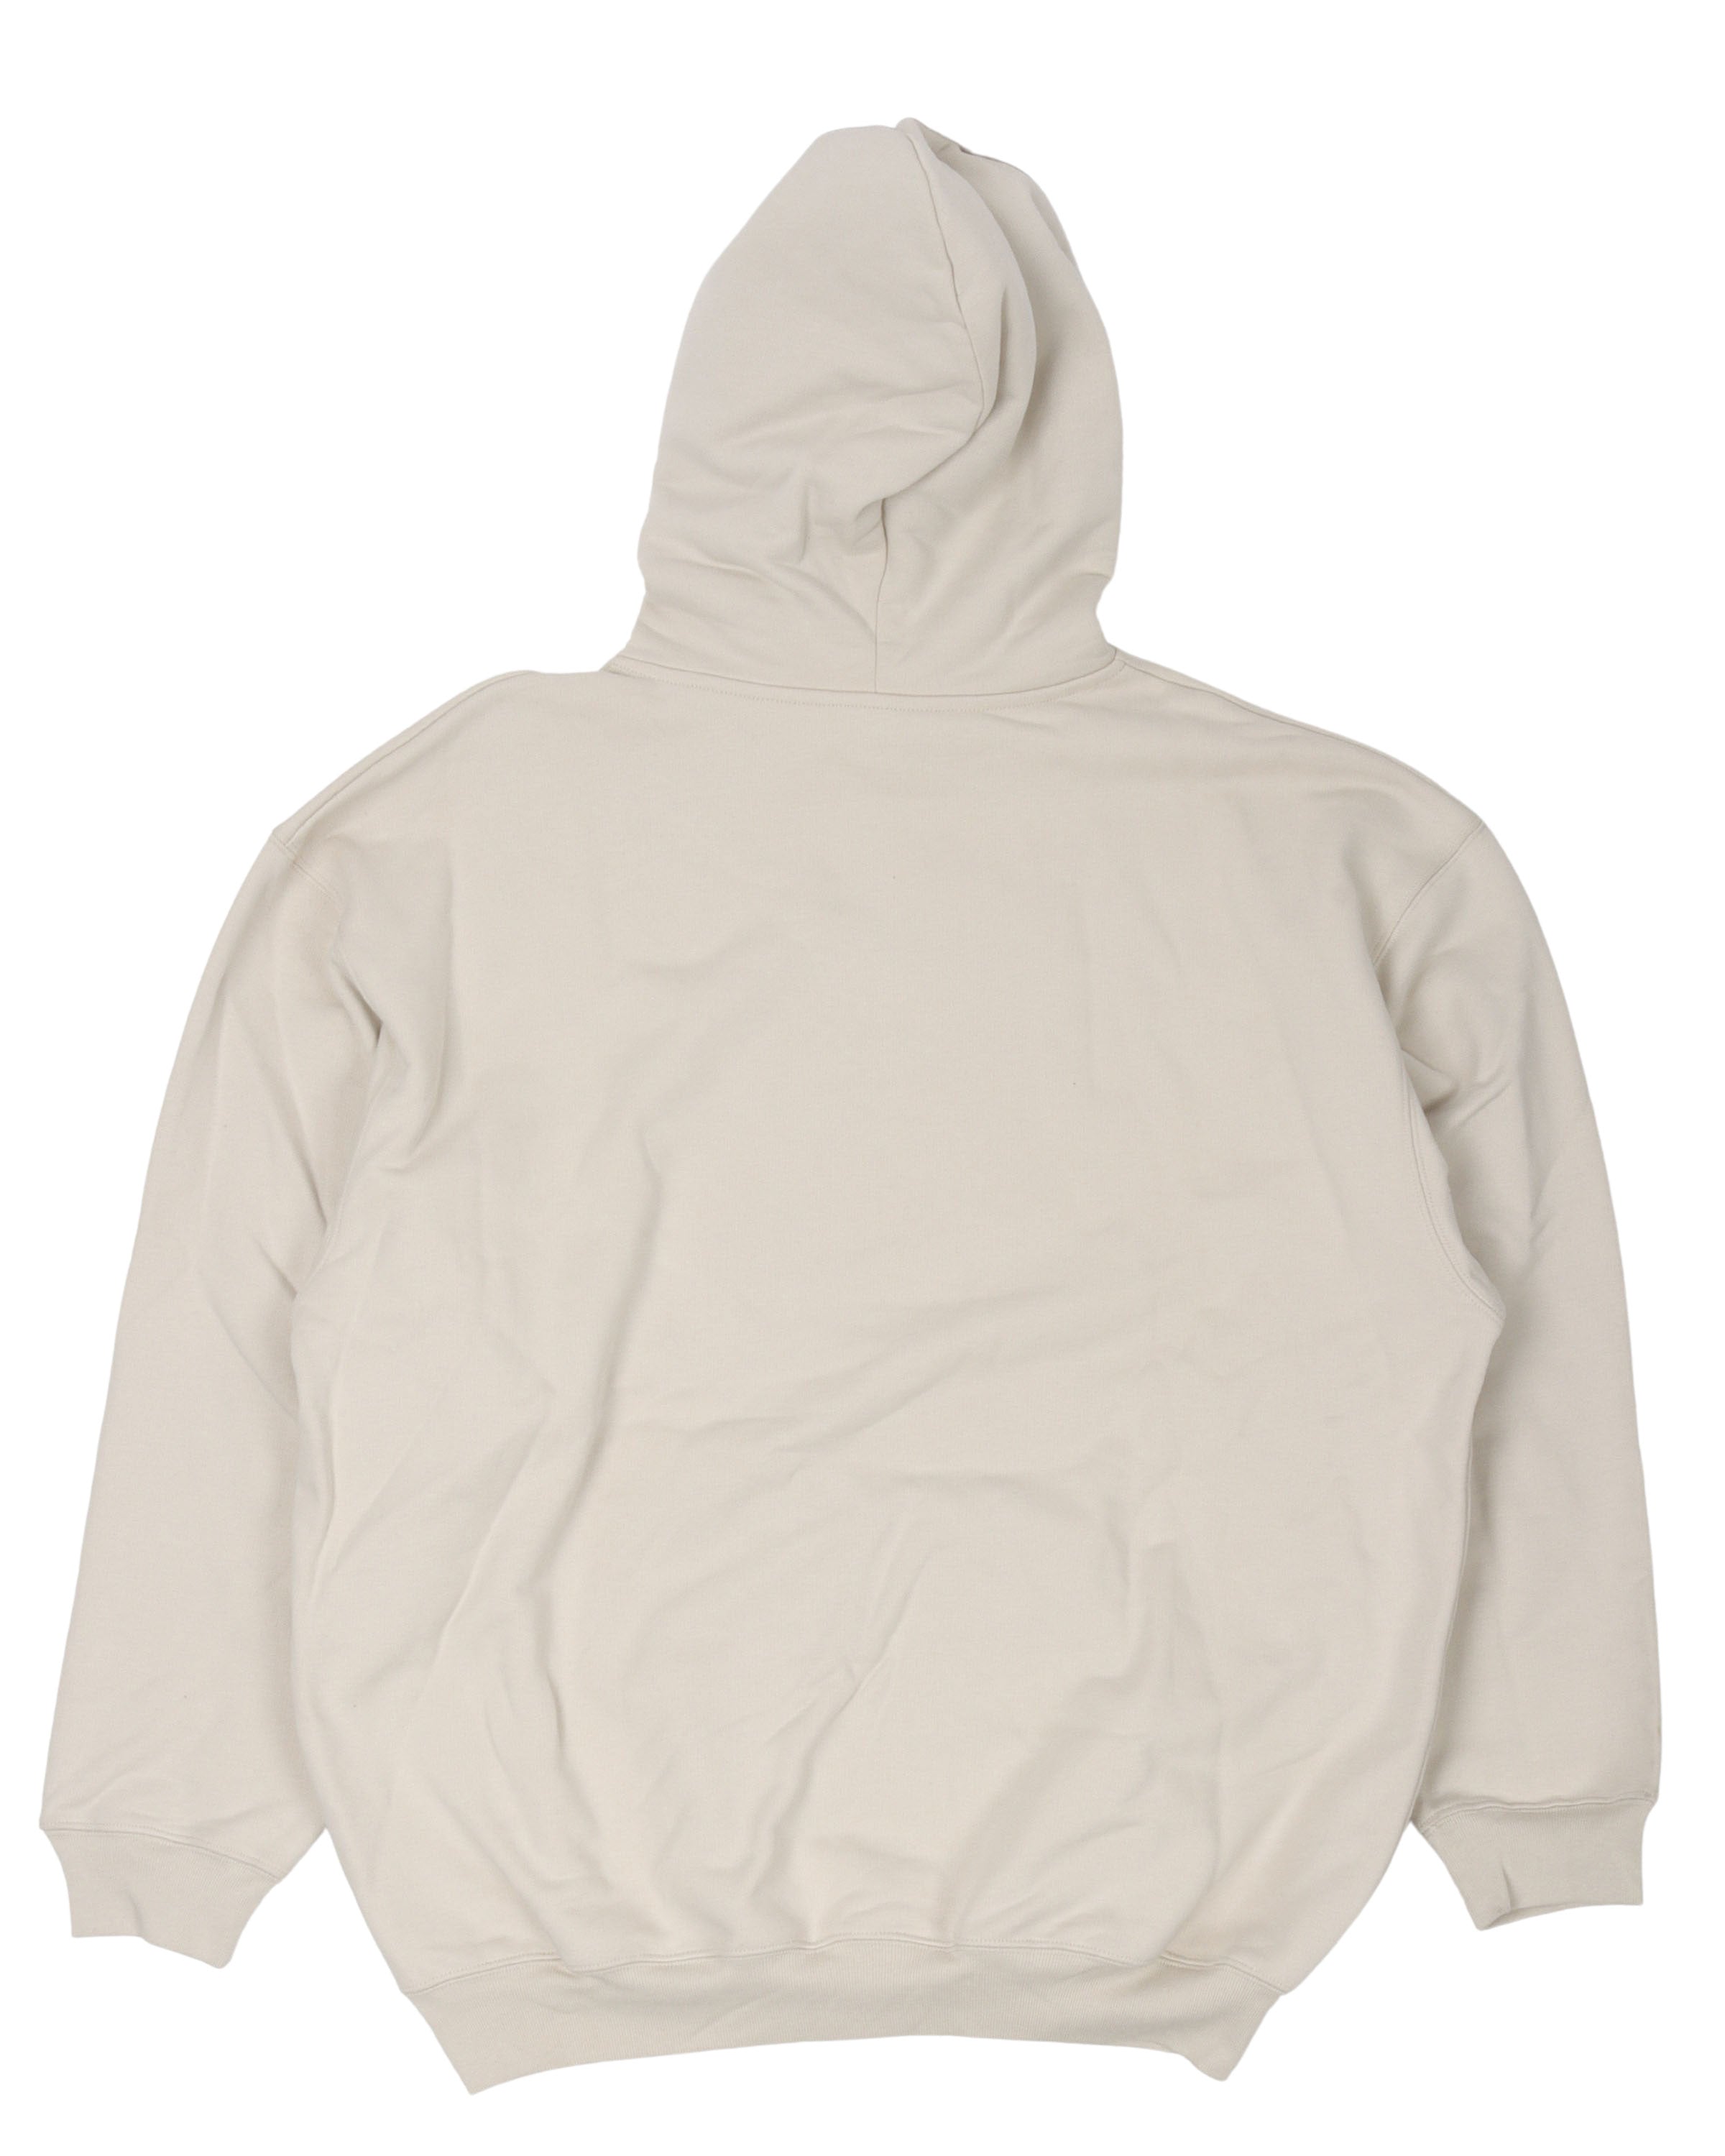 Trademark Hooded Sweatshirt